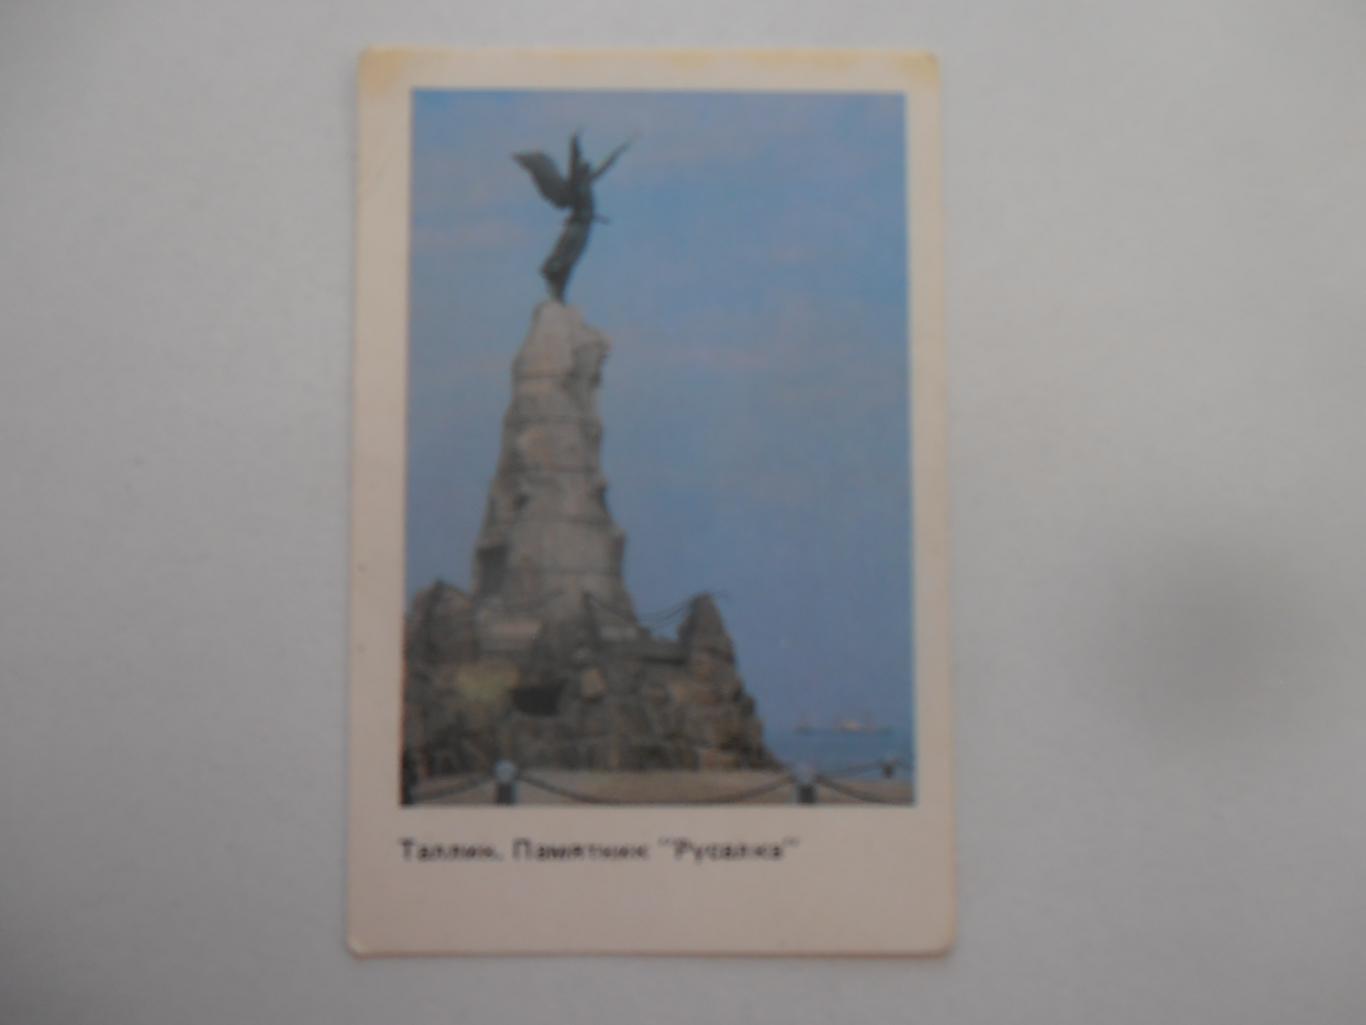 Календарик Таллин Памятник Русалка 1990